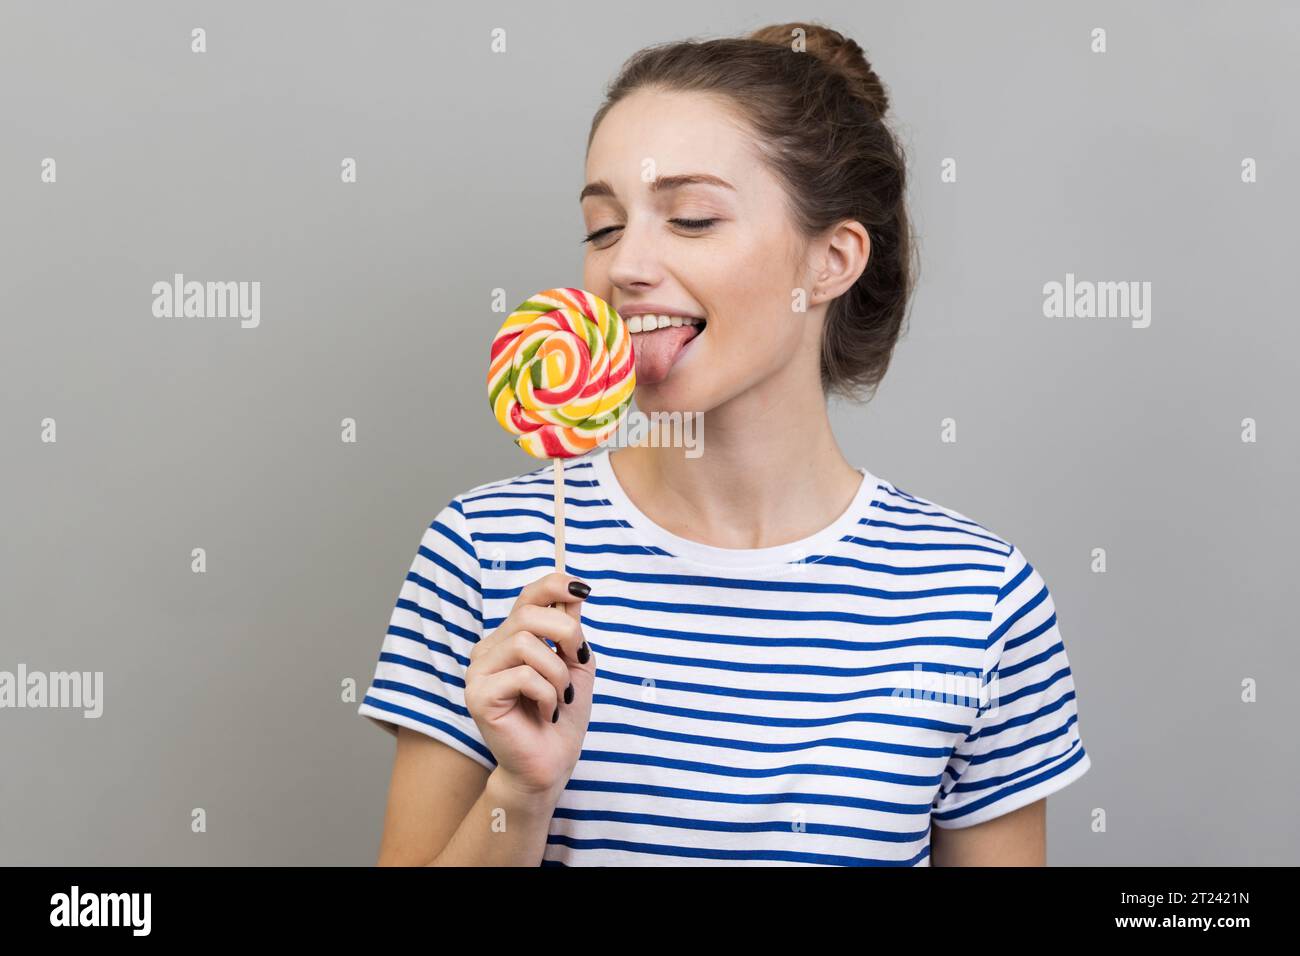 Porträt einer glücklichen Frau, die ein gestreiftes T-Shirt trägt und mit ausgezogener Zunge steht, träumt und versucht ist, Lutscher zu schmecken, runde süße Süßigkeiten aus dem Regenbogen. Innenstudio isoliert auf grauem Hintergrund. Stockfoto